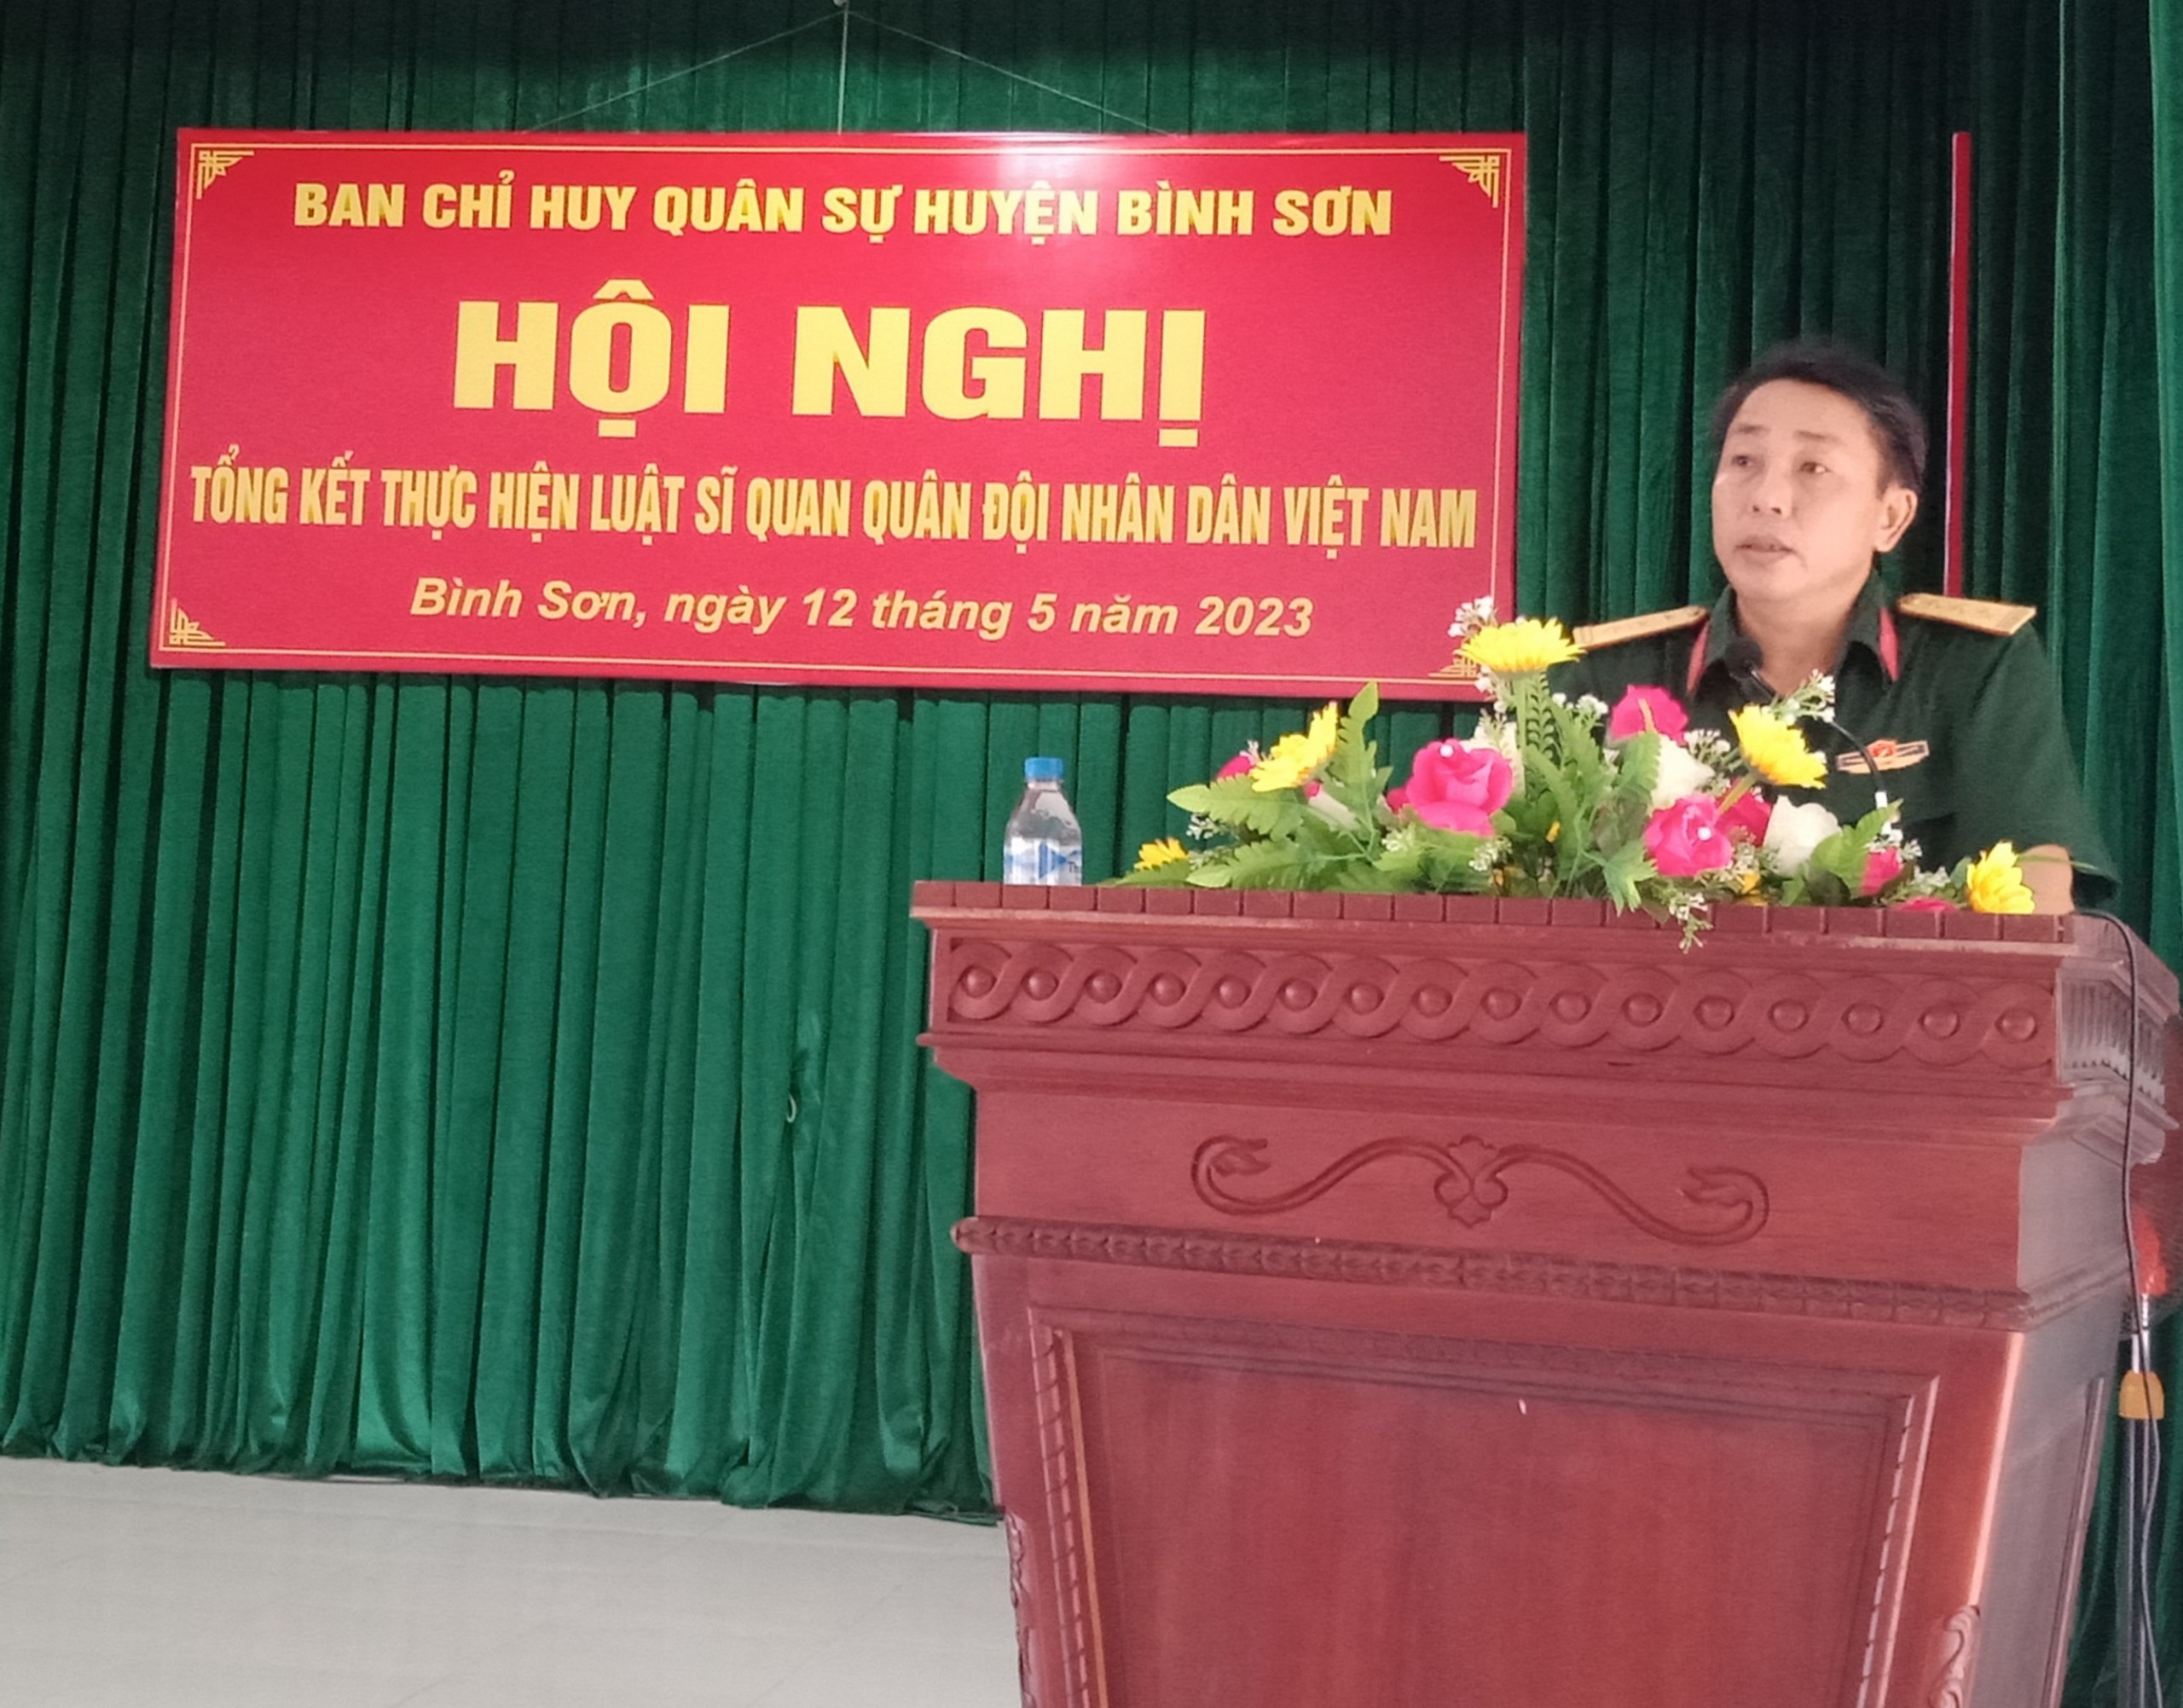 Bình Sơn: Tổng kết thực hiện Luật Sĩ quan Quân đội nhân dân Việt Nam